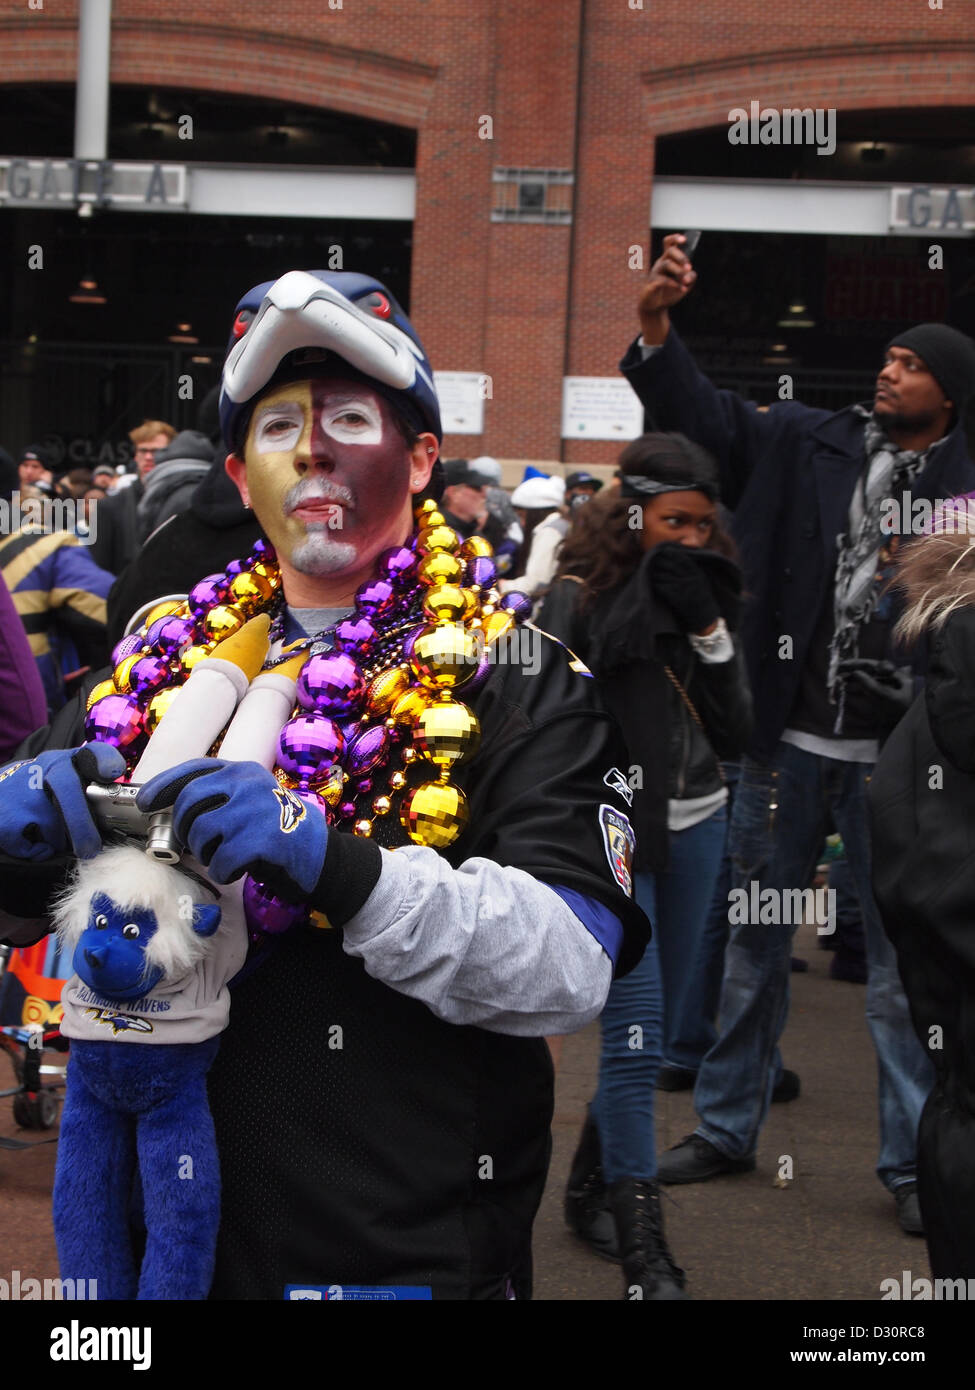 Une équipe de football Baltimore Ravens célèbre ventilateur tout en portant des perles de fête et un miroir dans les équipes à l'extérieur de couleurs violet et or les corbeaux Stade M and T Bank à Baltimore, Maryland, le 5 février 2013. Banque D'Images